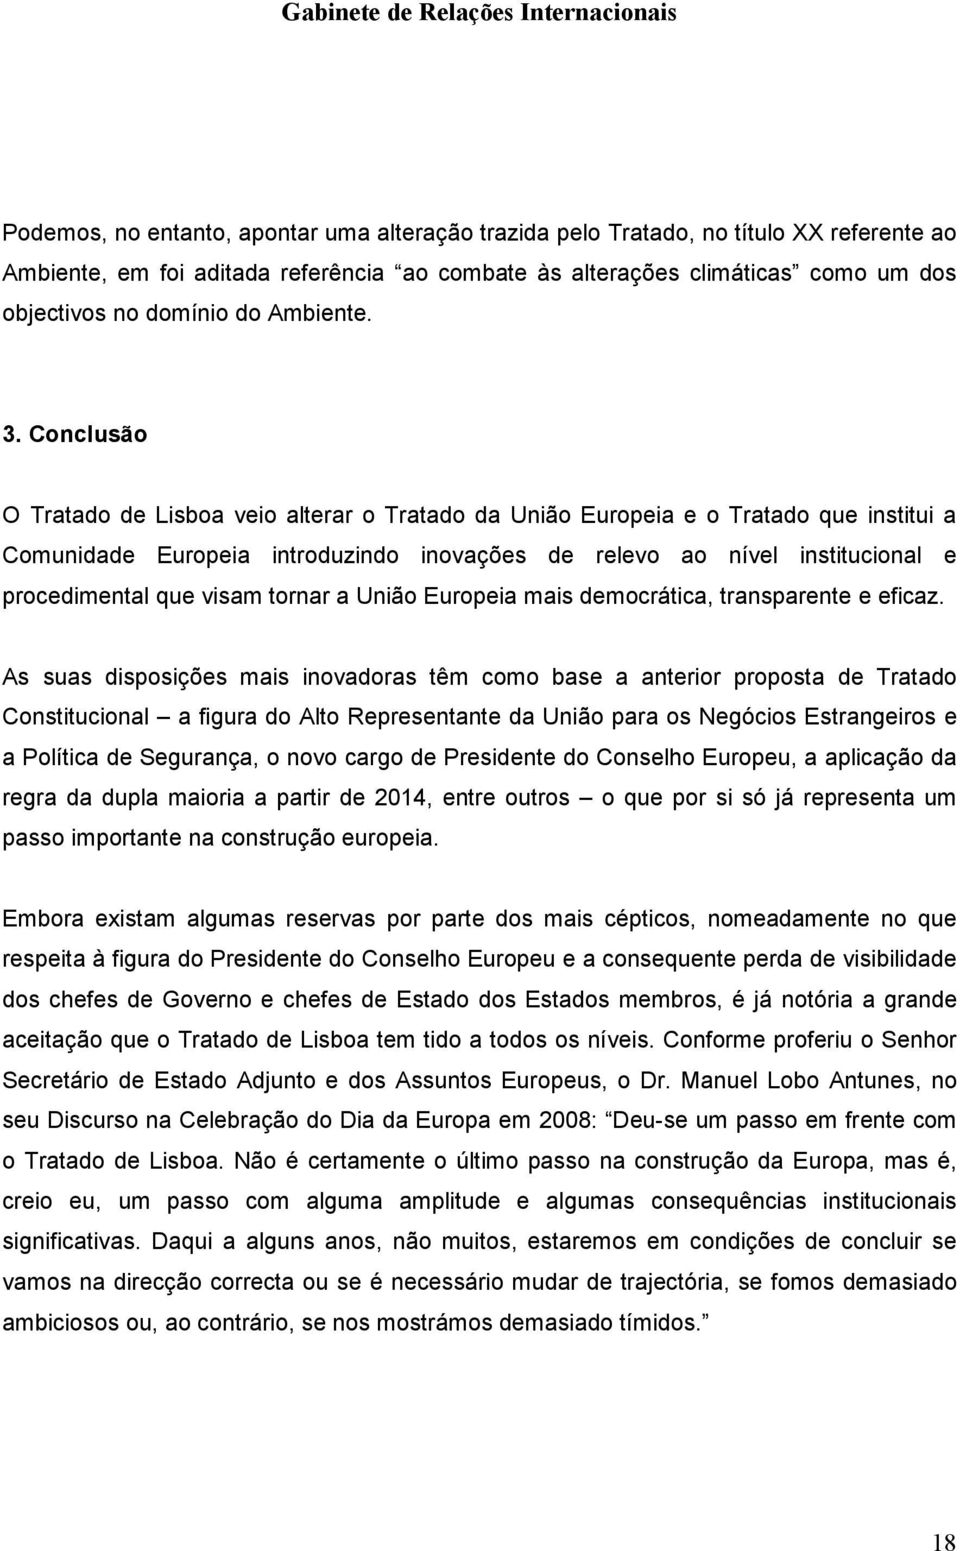 Conclusão O Tratado de Lisboa veio alterar o Tratado da União Europeia e o Tratado que institui a Comunidade Europeia introduzindo inovações de relevo ao nível institucional e procedimental que visam